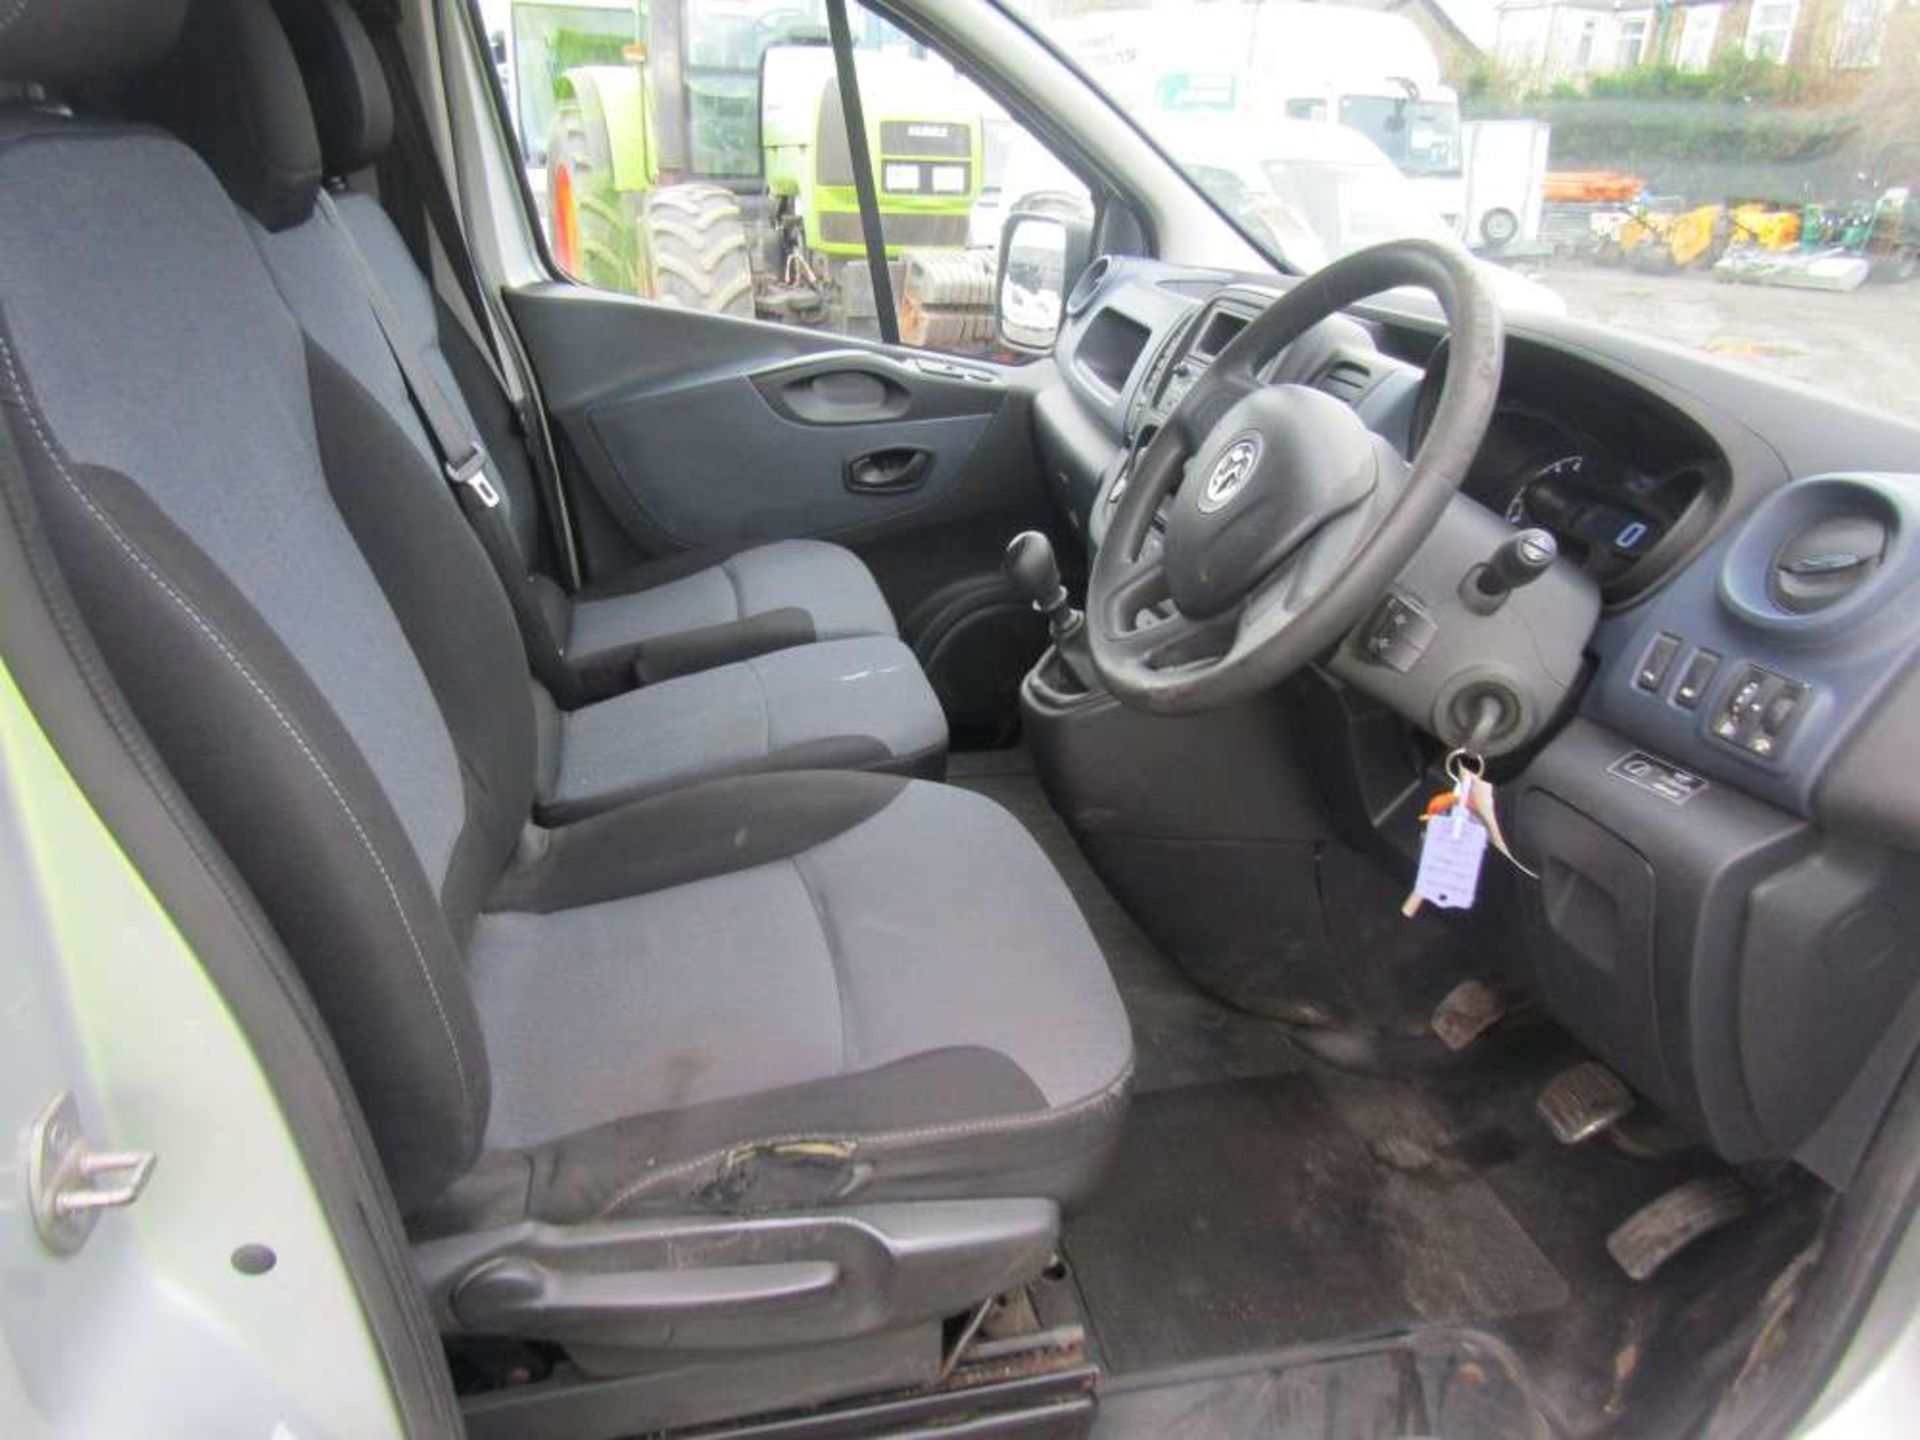 2014 64 reg Vauxhall Vivaro 2900 CDTI Ecoflex - Bild 6 aus 7